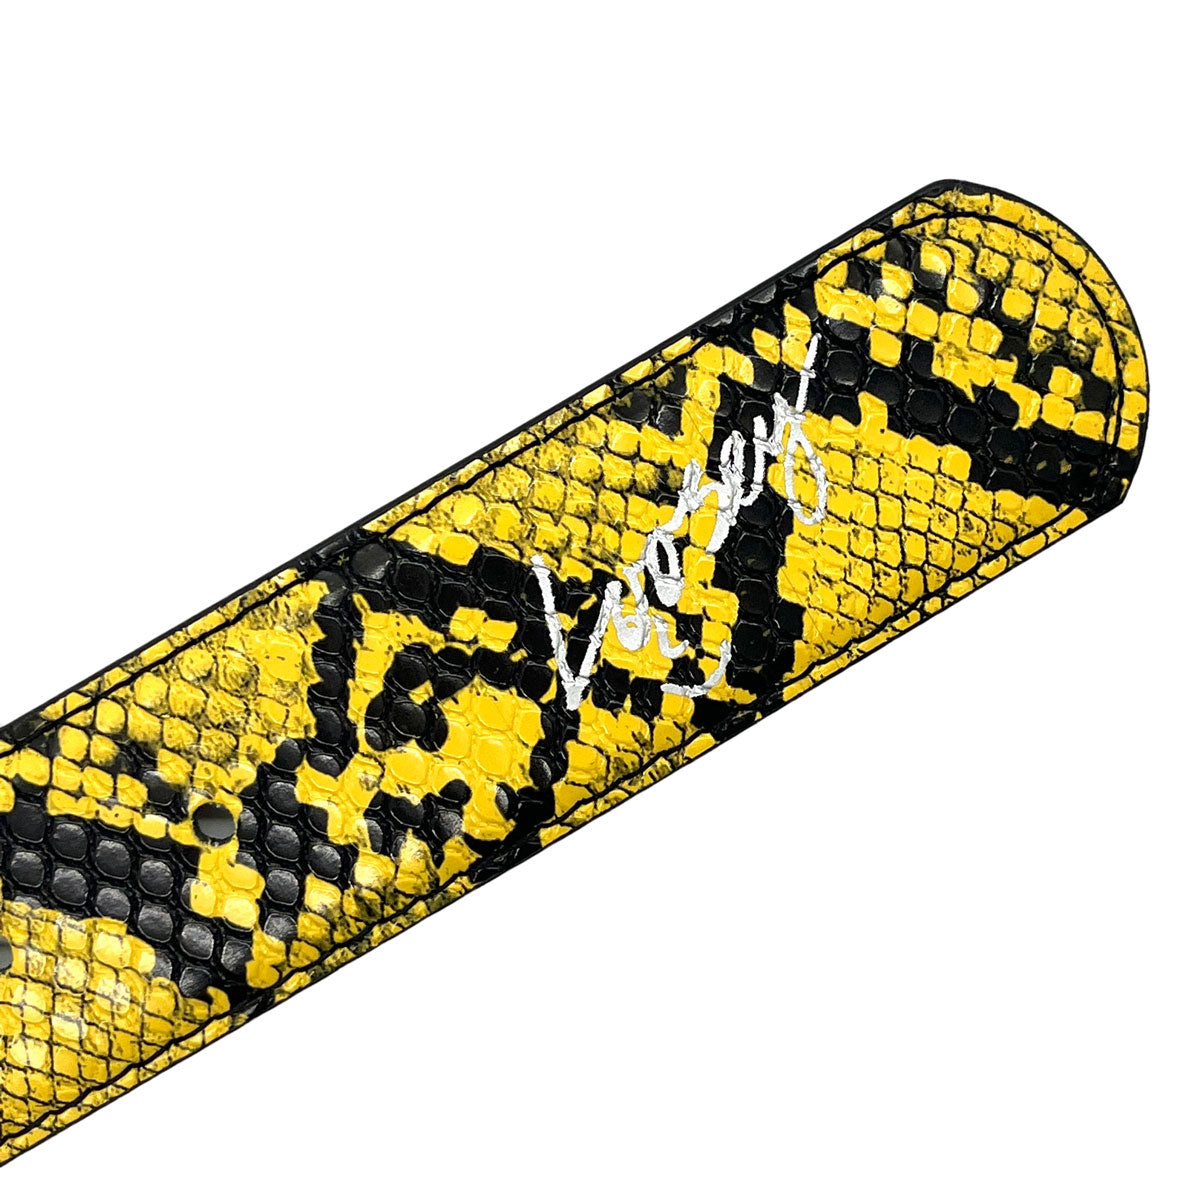 Loosey Snake Skin Belt - Yellow image 2